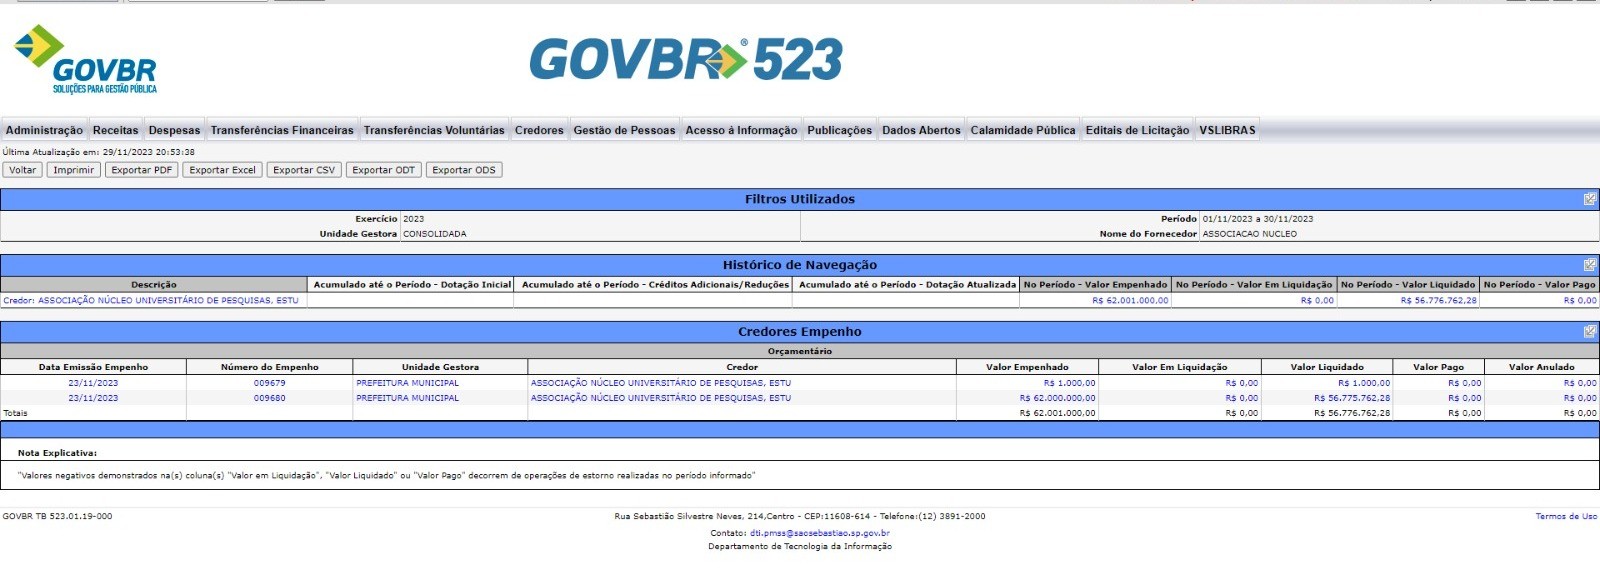 Ação popular pede devolução de R$ 56,7 milhões pagos pela Prefeitura de São Sebastião para associação de advogados